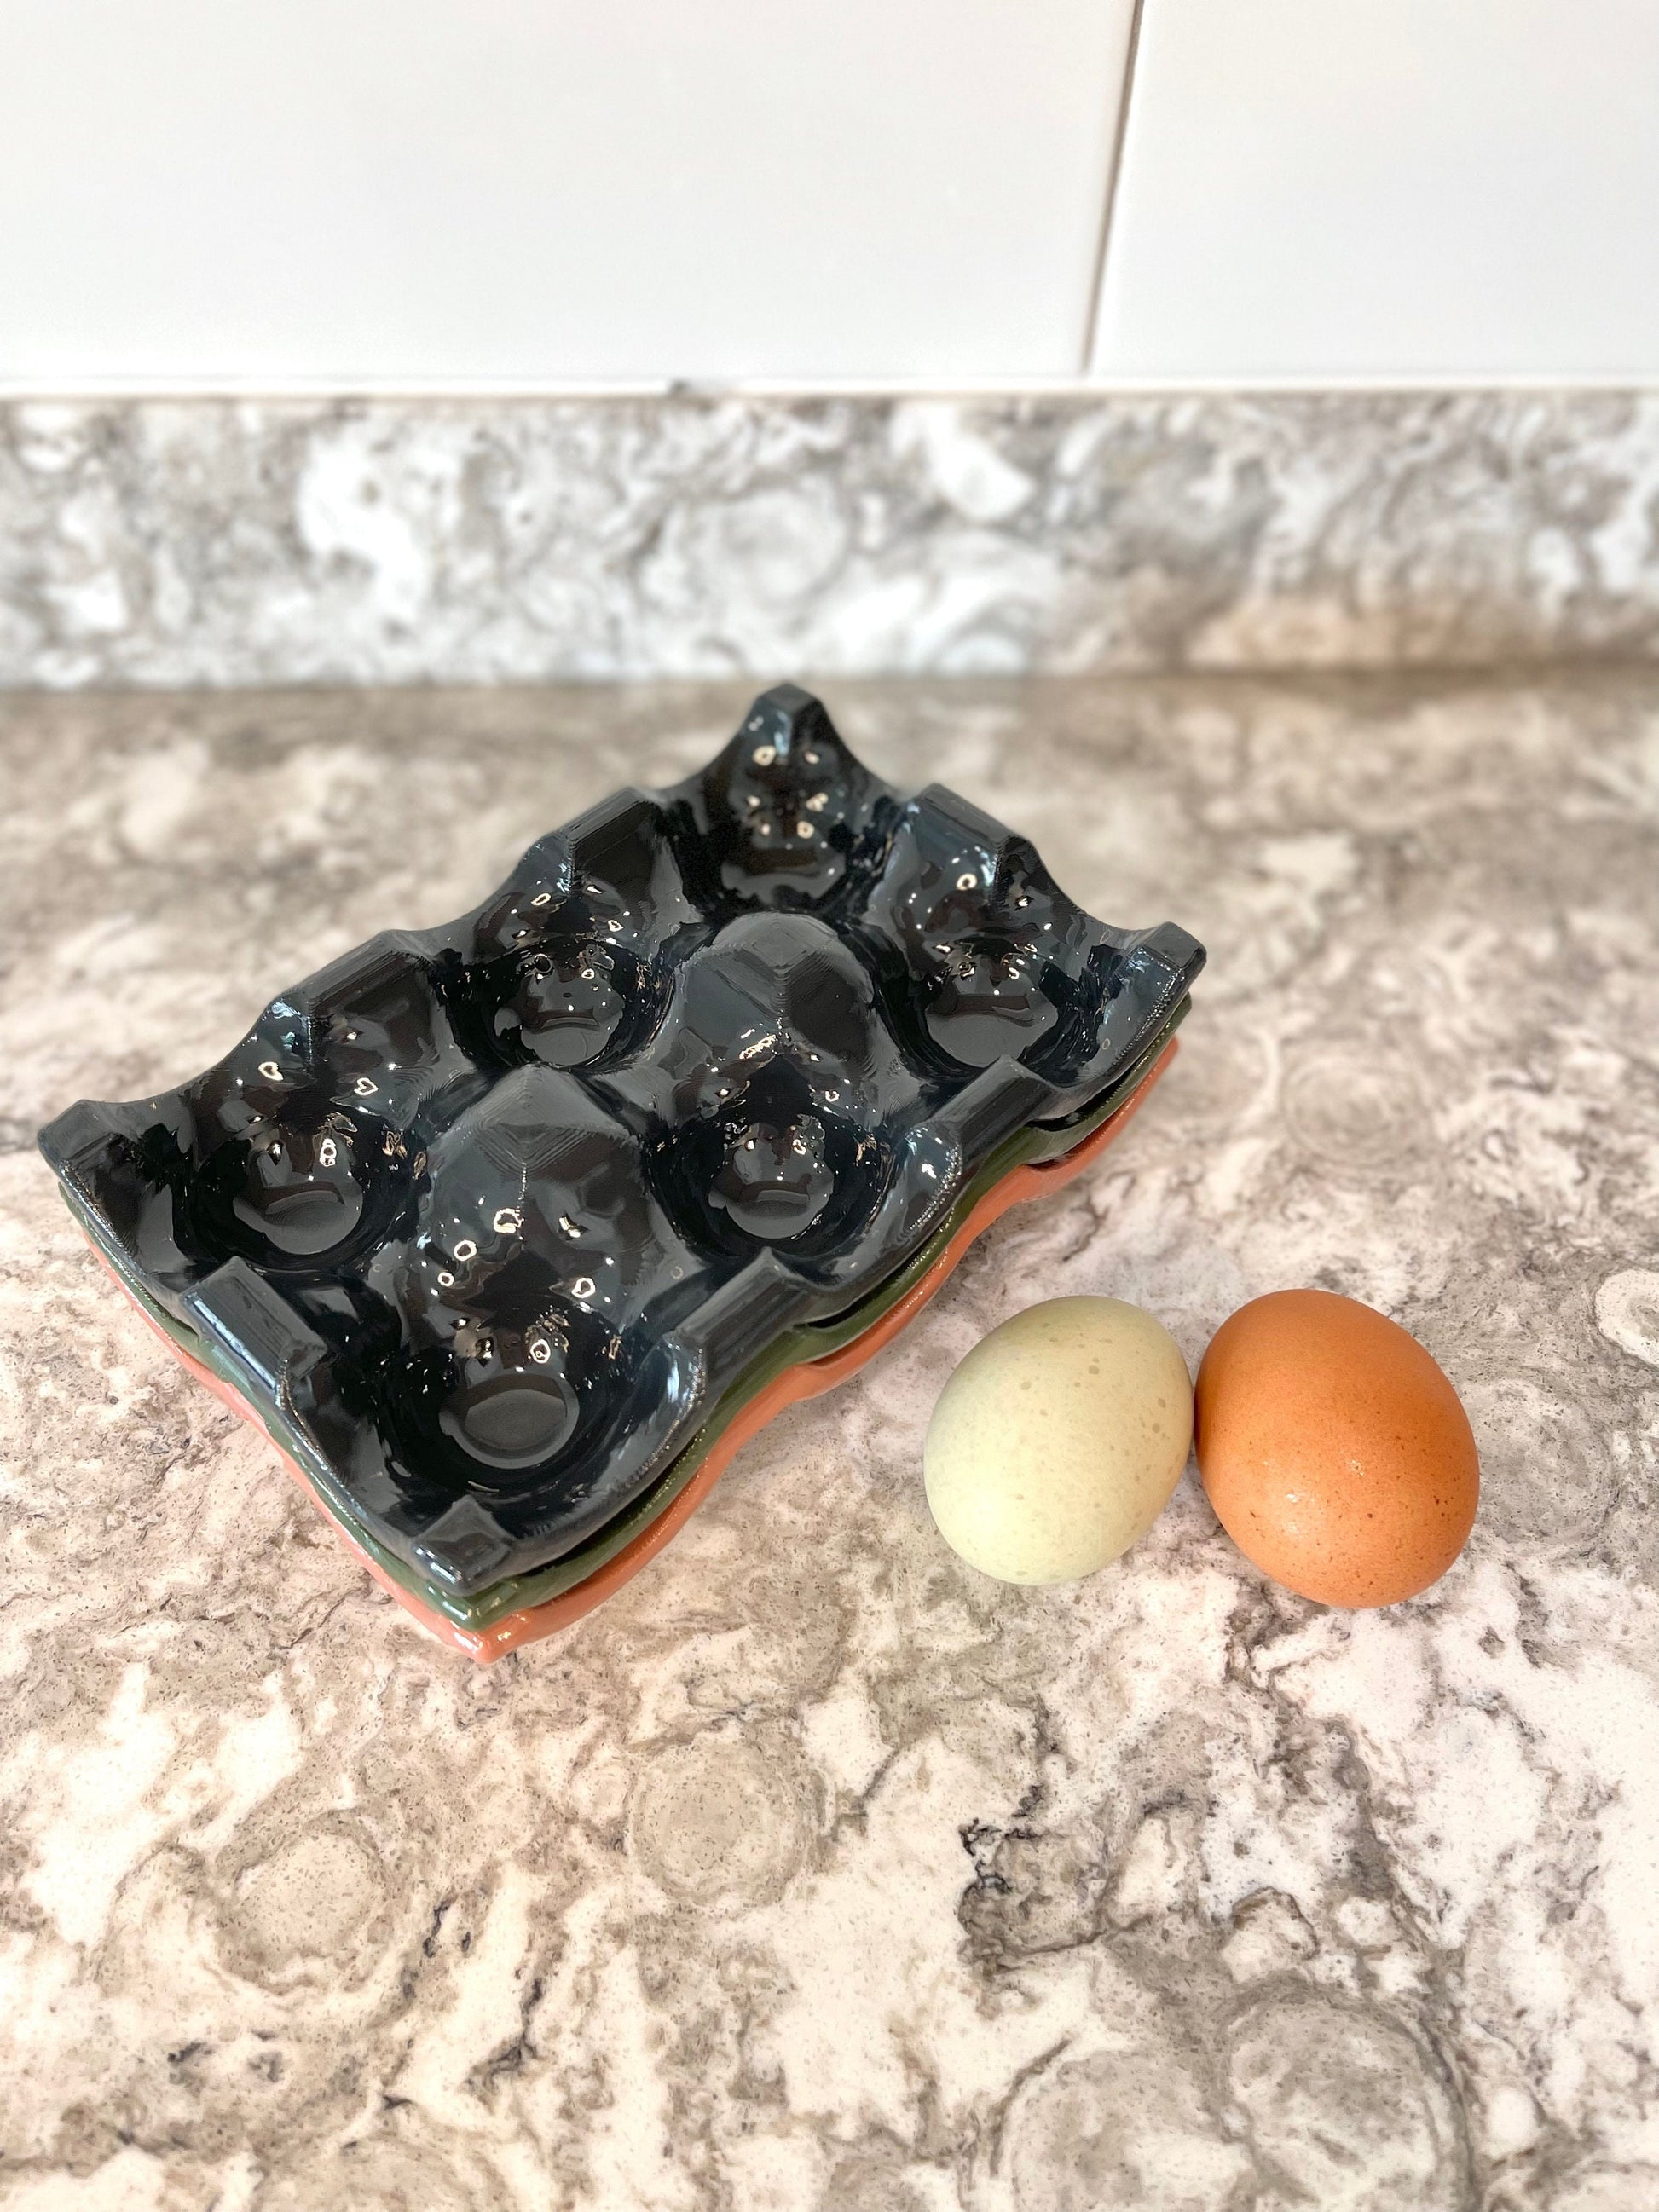 Ceramic Egg Holder